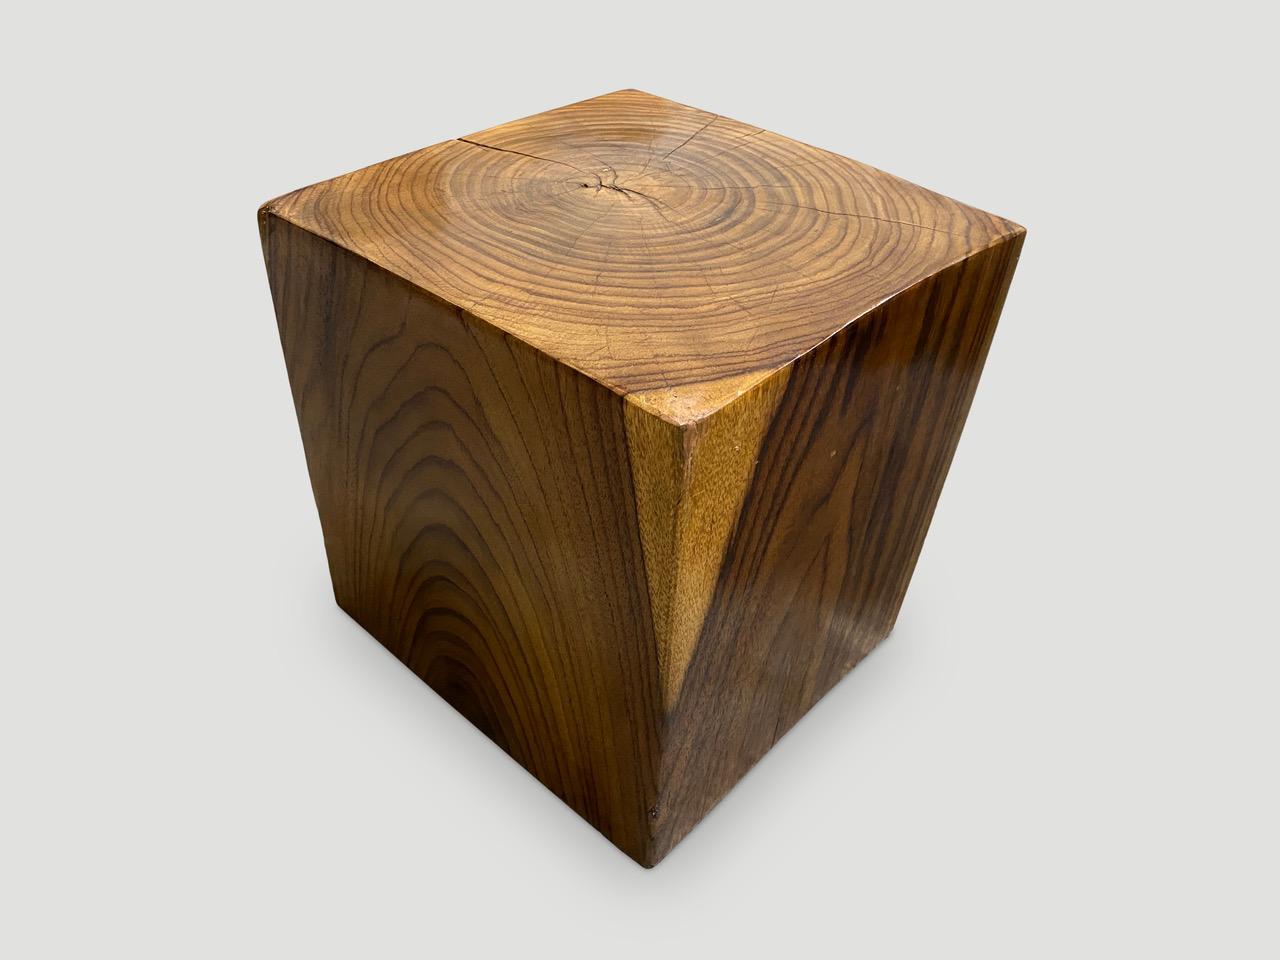 Cube minimaliste en bois de sono. Une finition à l'huile naturelle révèle les magnifiques veines du bois. Nous en avons une collection de trois. Le prix correspond à l'exemplaire présenté. 

Posséder un original d'Andrianna Shamaris.

Andrianna